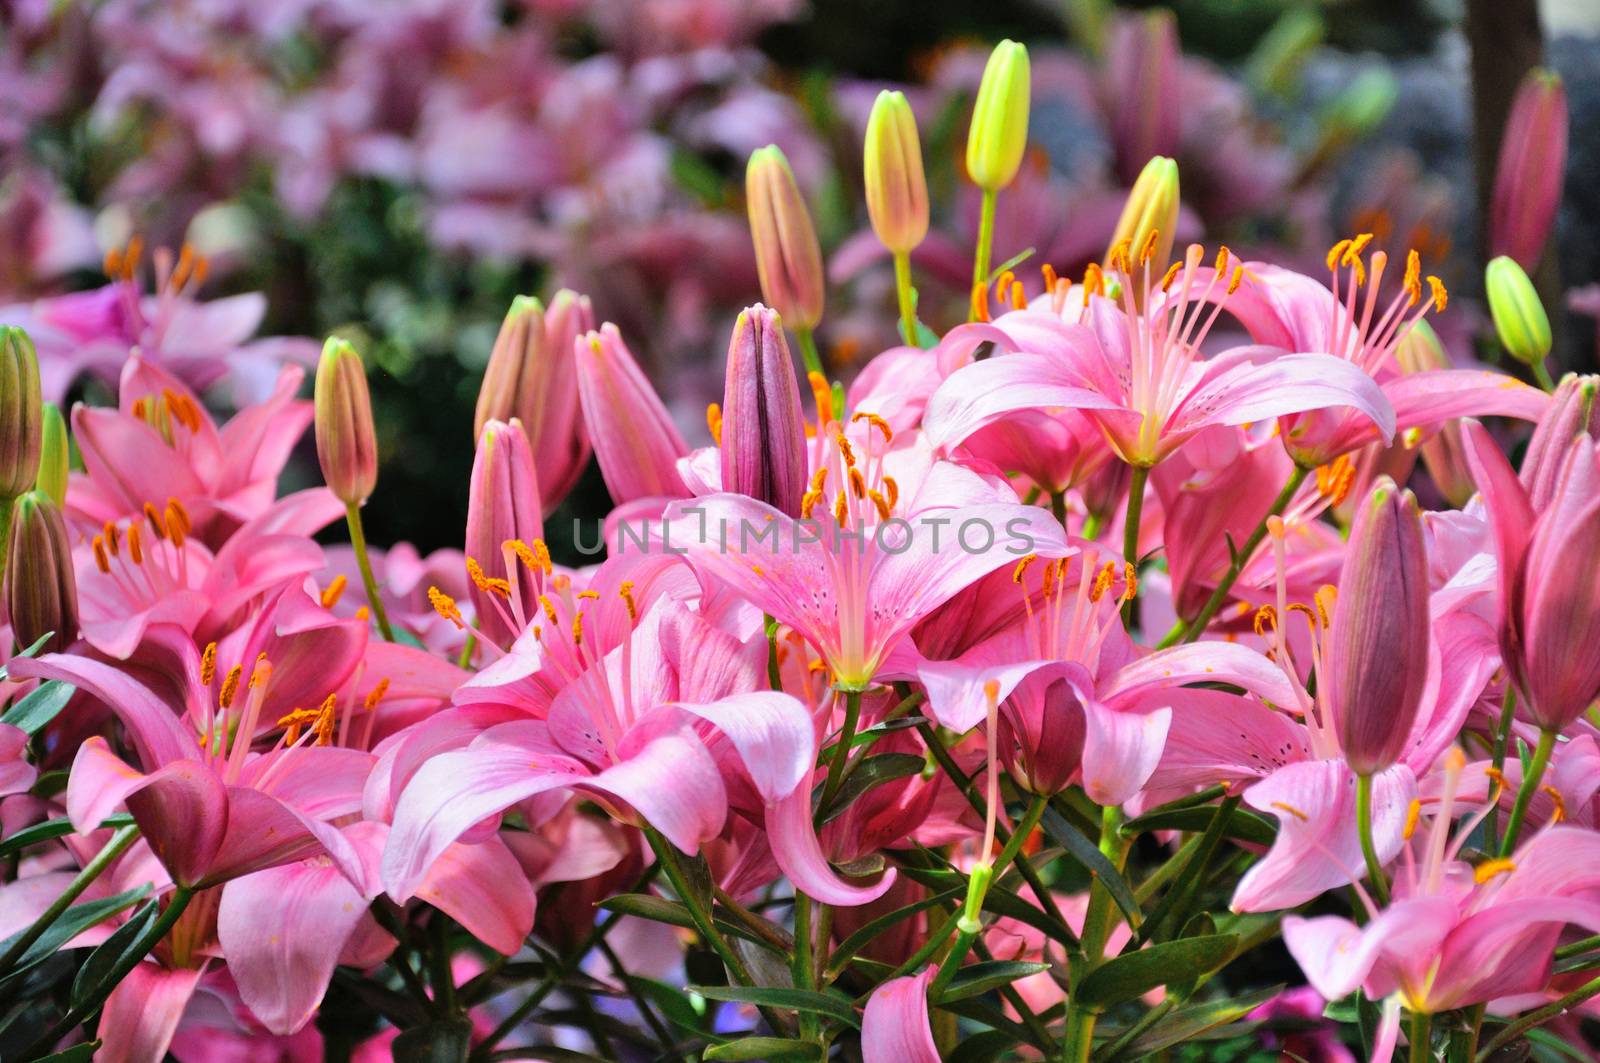 Pink lily flowers in closeup in Palmen Garten, Frankfurt am Main by Eagle2308